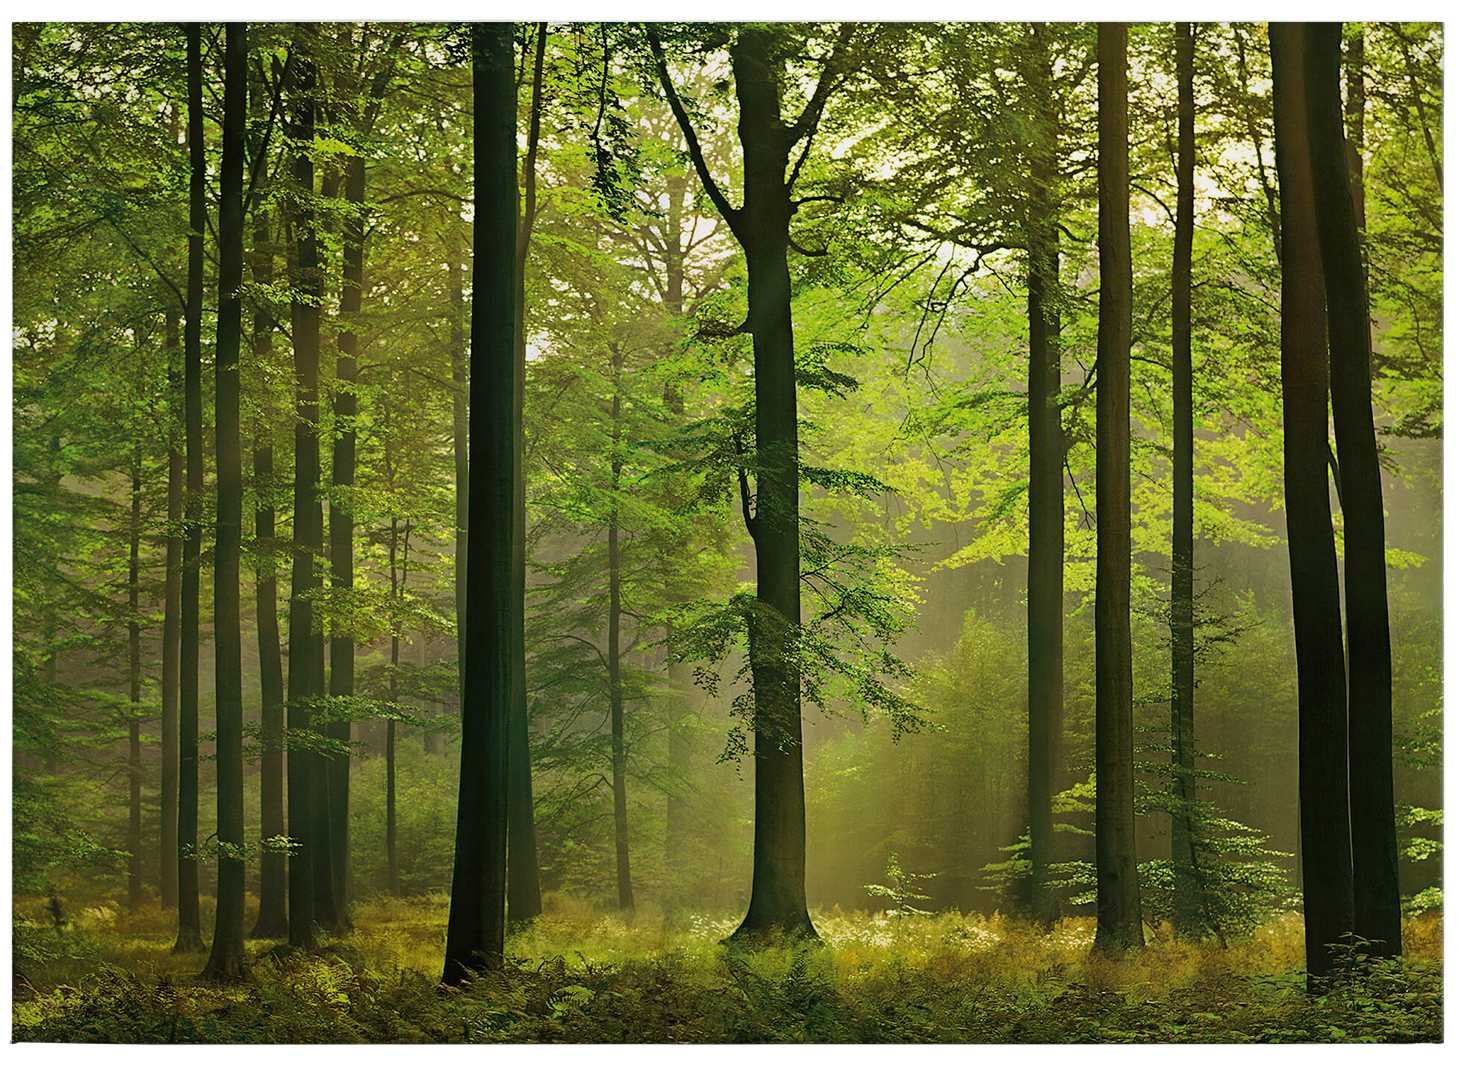             Toile motif forêt feuilles d'automne - 0,70 m x 0,50 m
        